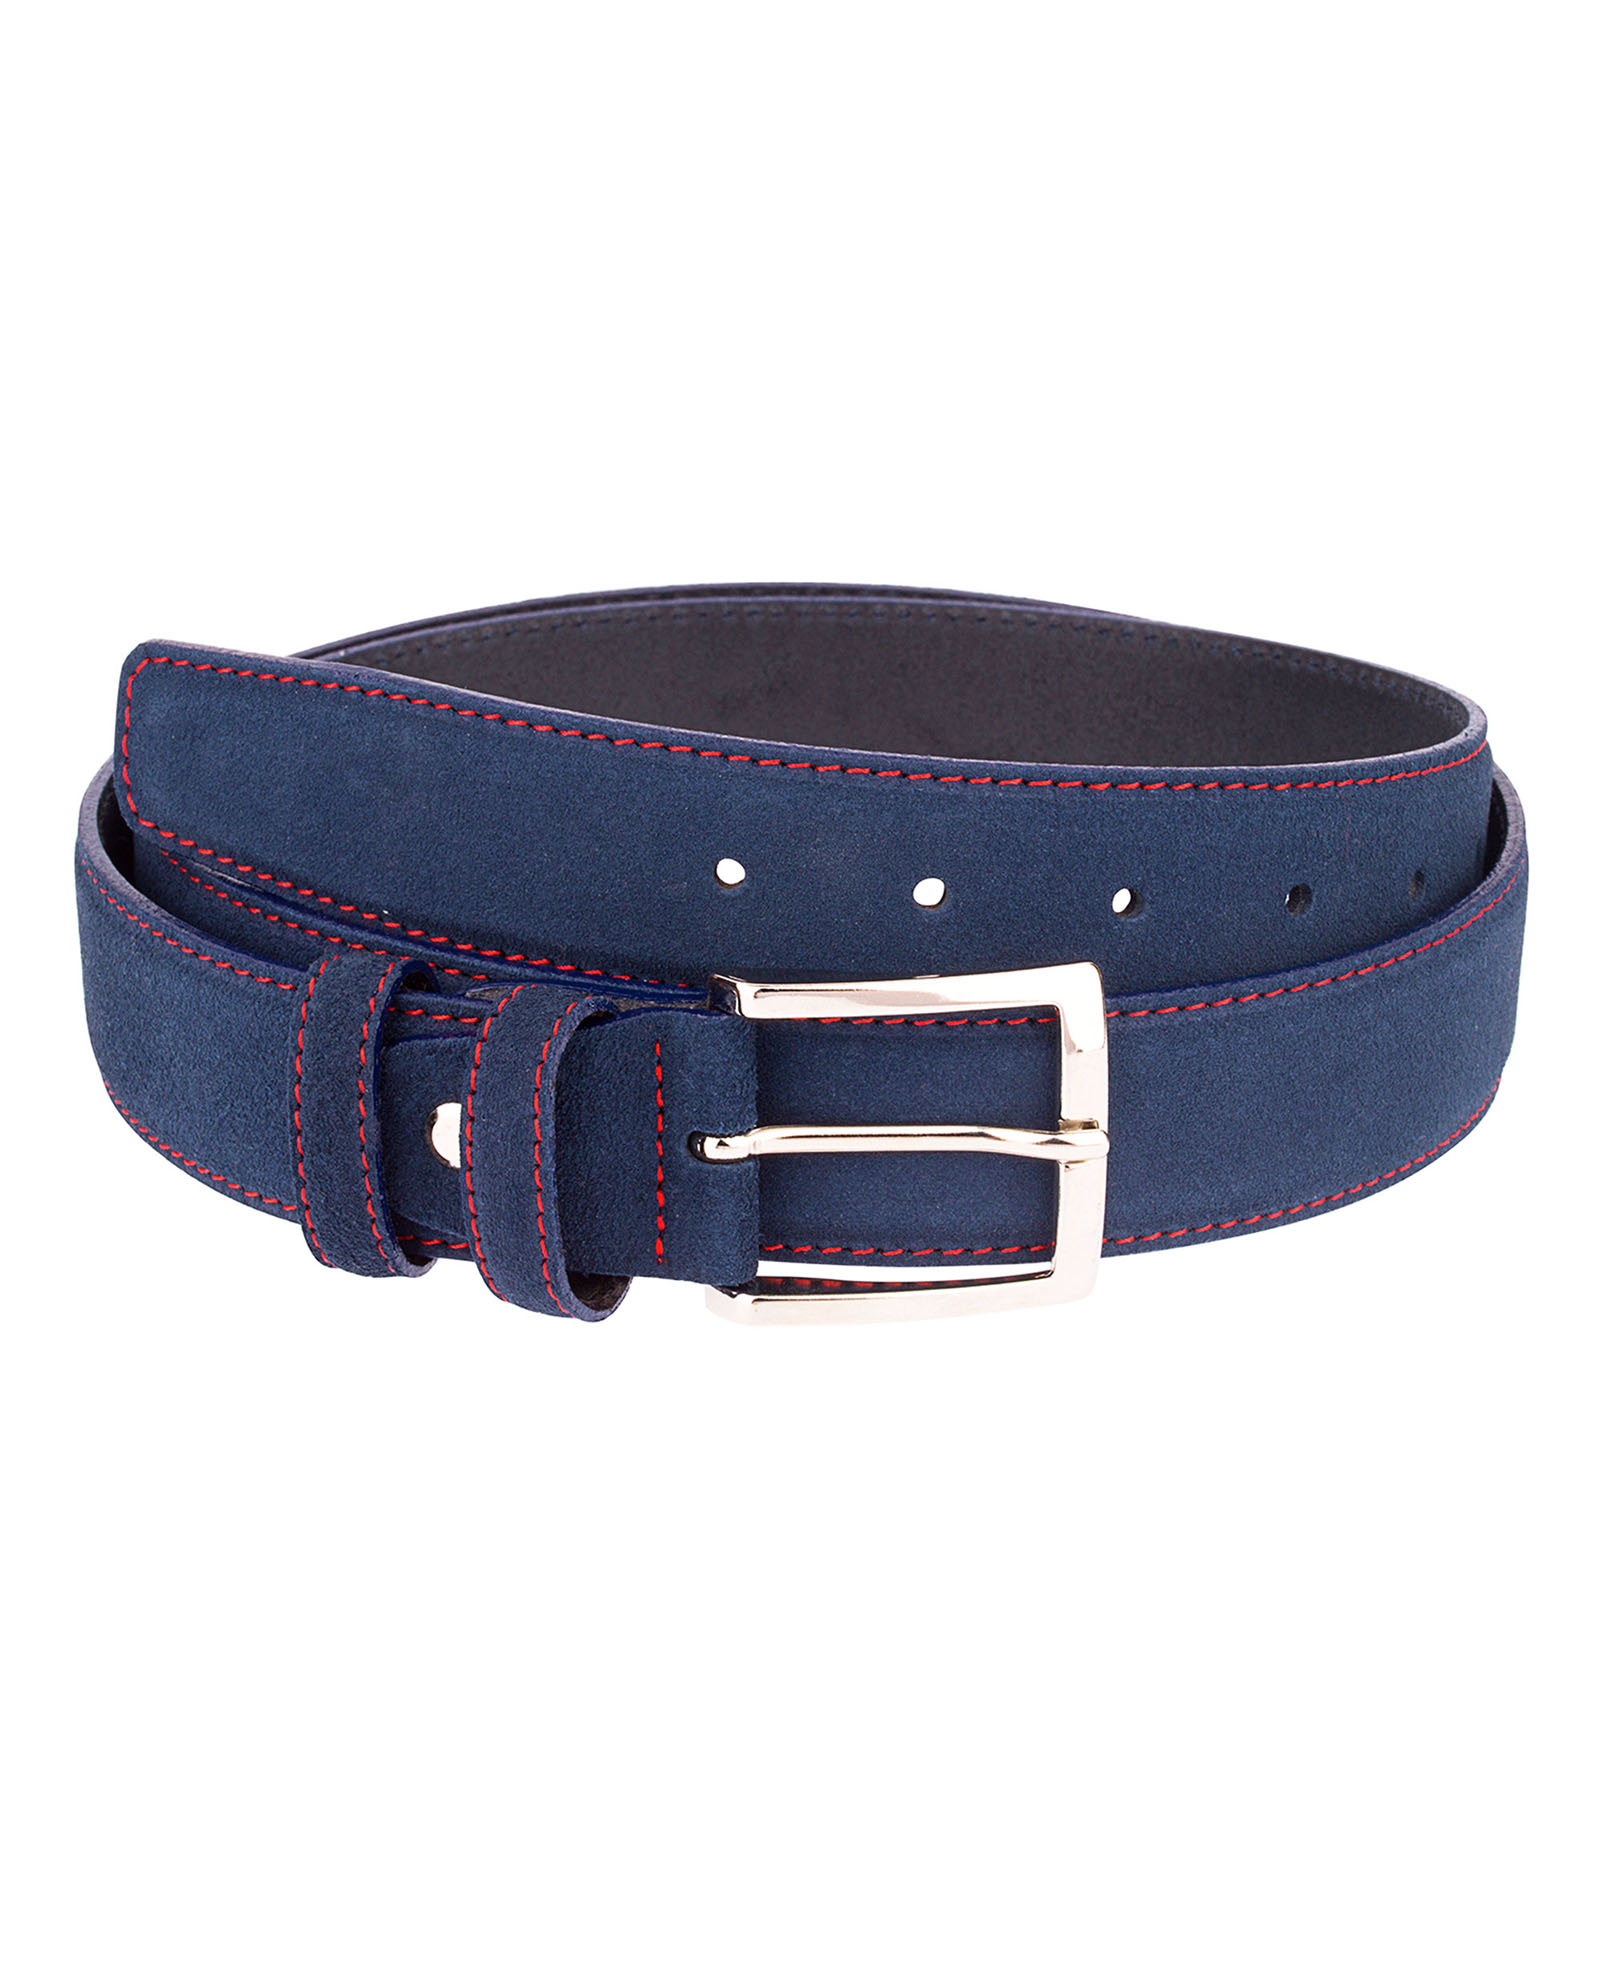 Buy Blue Suede Belt | Red Stitching | LeatherBeltsOnline.com